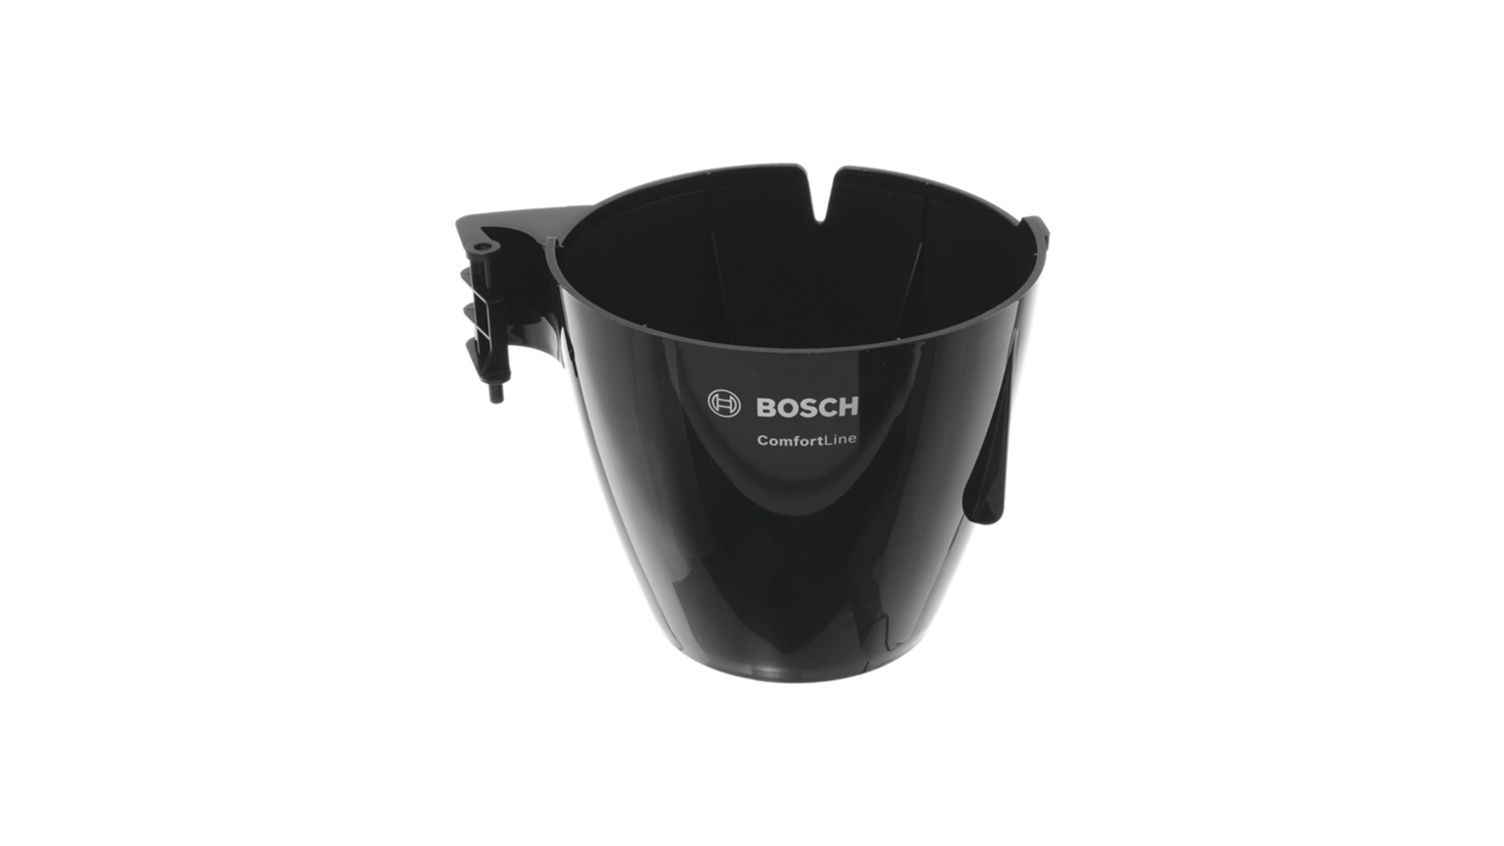 Filter Holder for Bosch Siemens Coffee Makers - 12014349 BSH - Bosch / Siemens